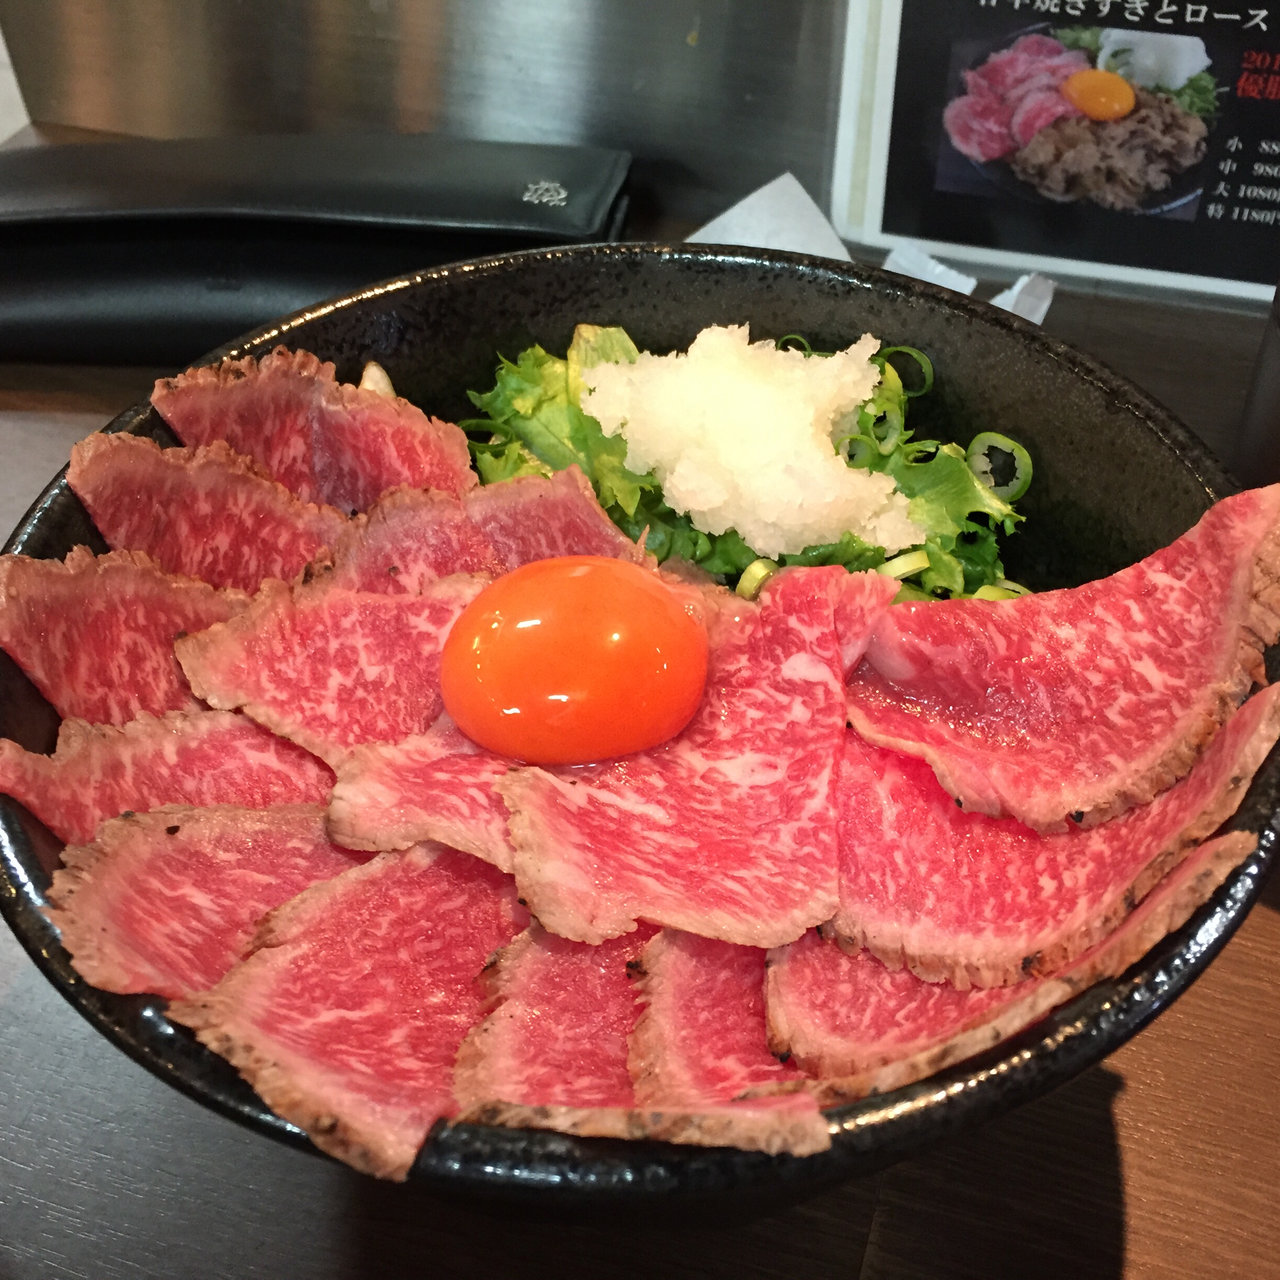 豪快な大阪ならでは 人気のローストビーフ丼を出すお店 Sarah サラ 料理メニューから探せるグルメサイト